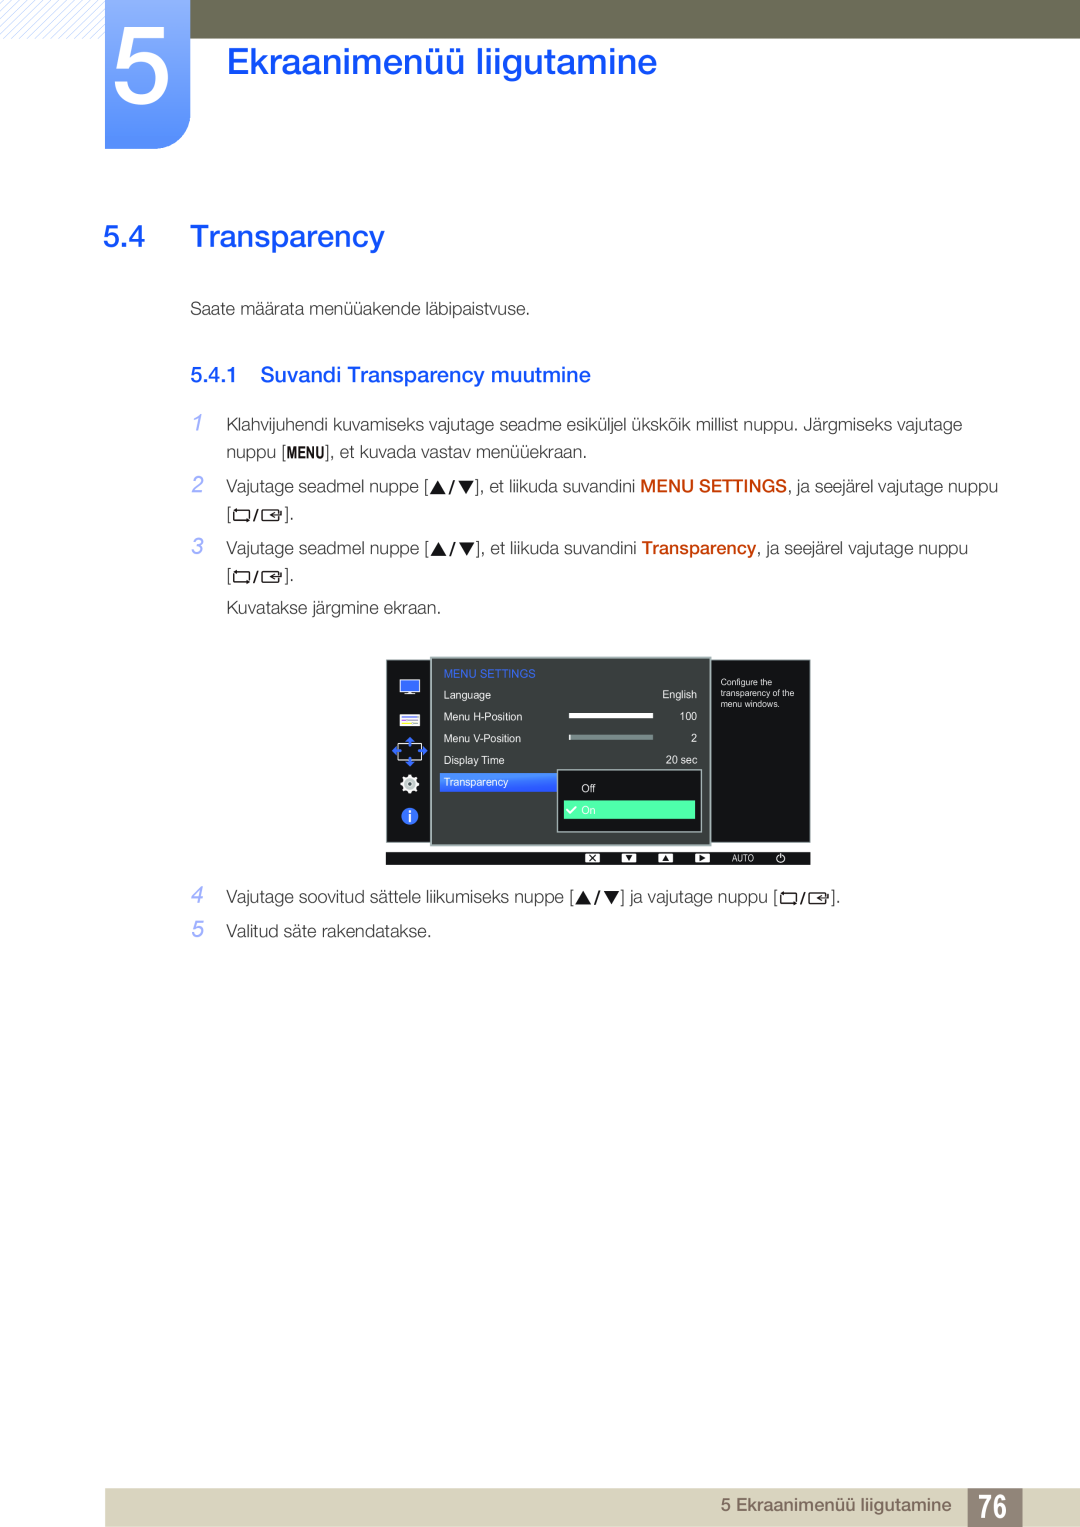 Samsung LS24D300HS/EN, LS24D340HSX/EN, LS22D300HY/EN manual Suvandi Transparency muutmine, Ekraanimenüü liigutamine 